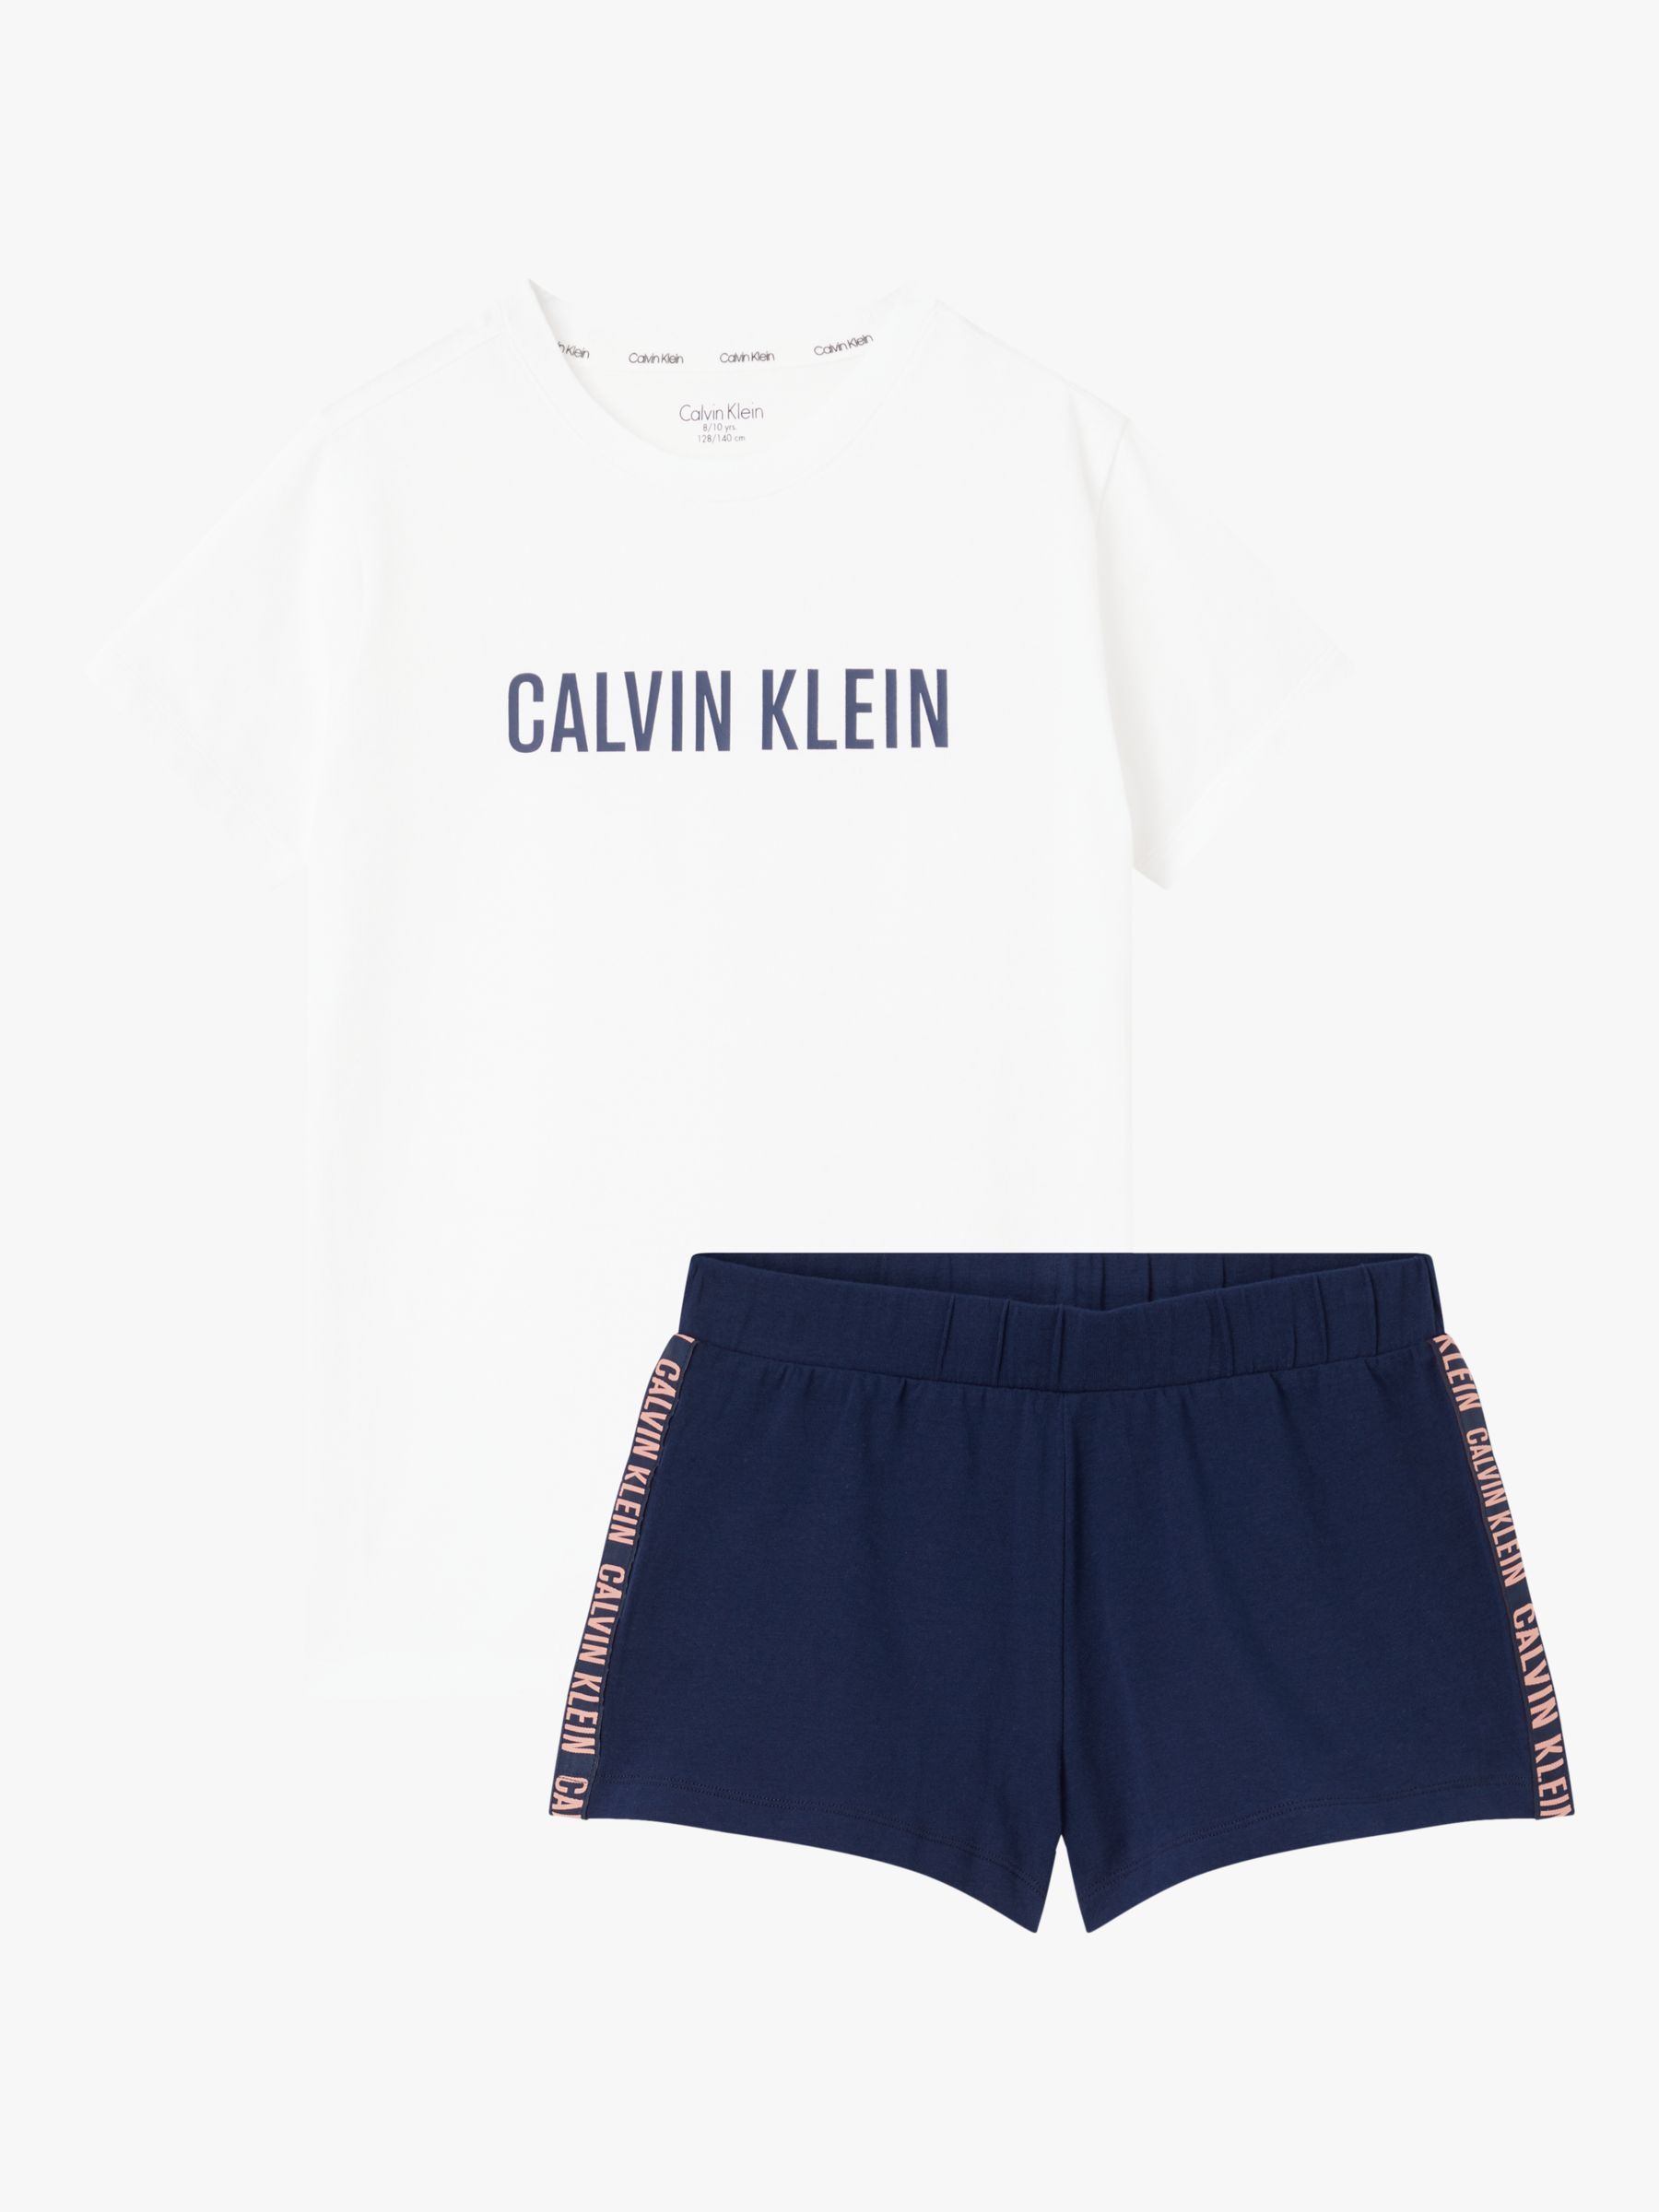 Calvin Klein Kids' Logo Short Sleeve Pyjama Set, Navy/White at John ...